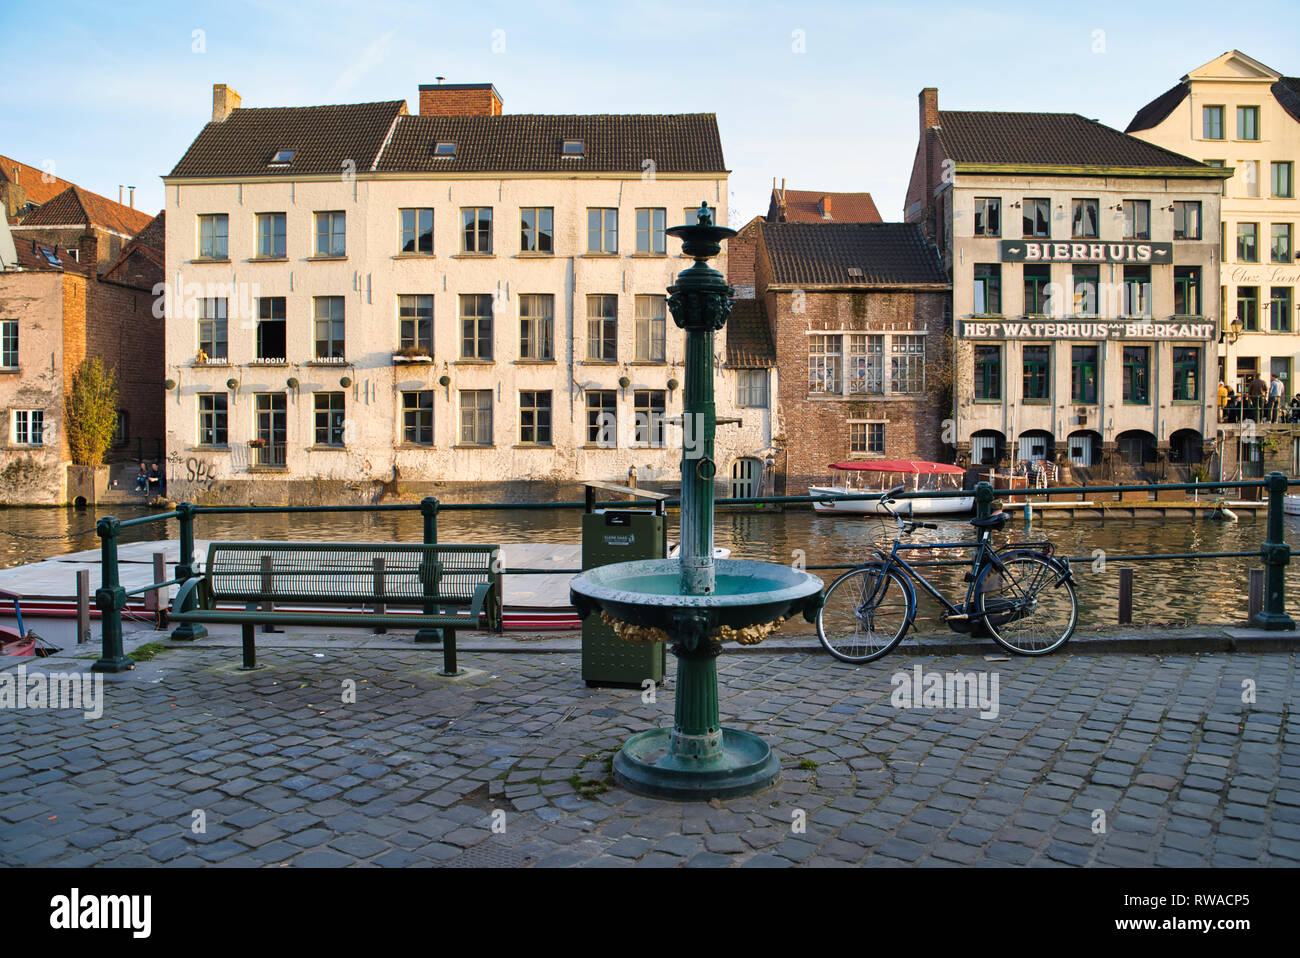 GENT, Belgio - 17 febbraio 2019: passeggiata attraverso le strade della città, vedute di edifici storici, superba architettura stile Foto Stock